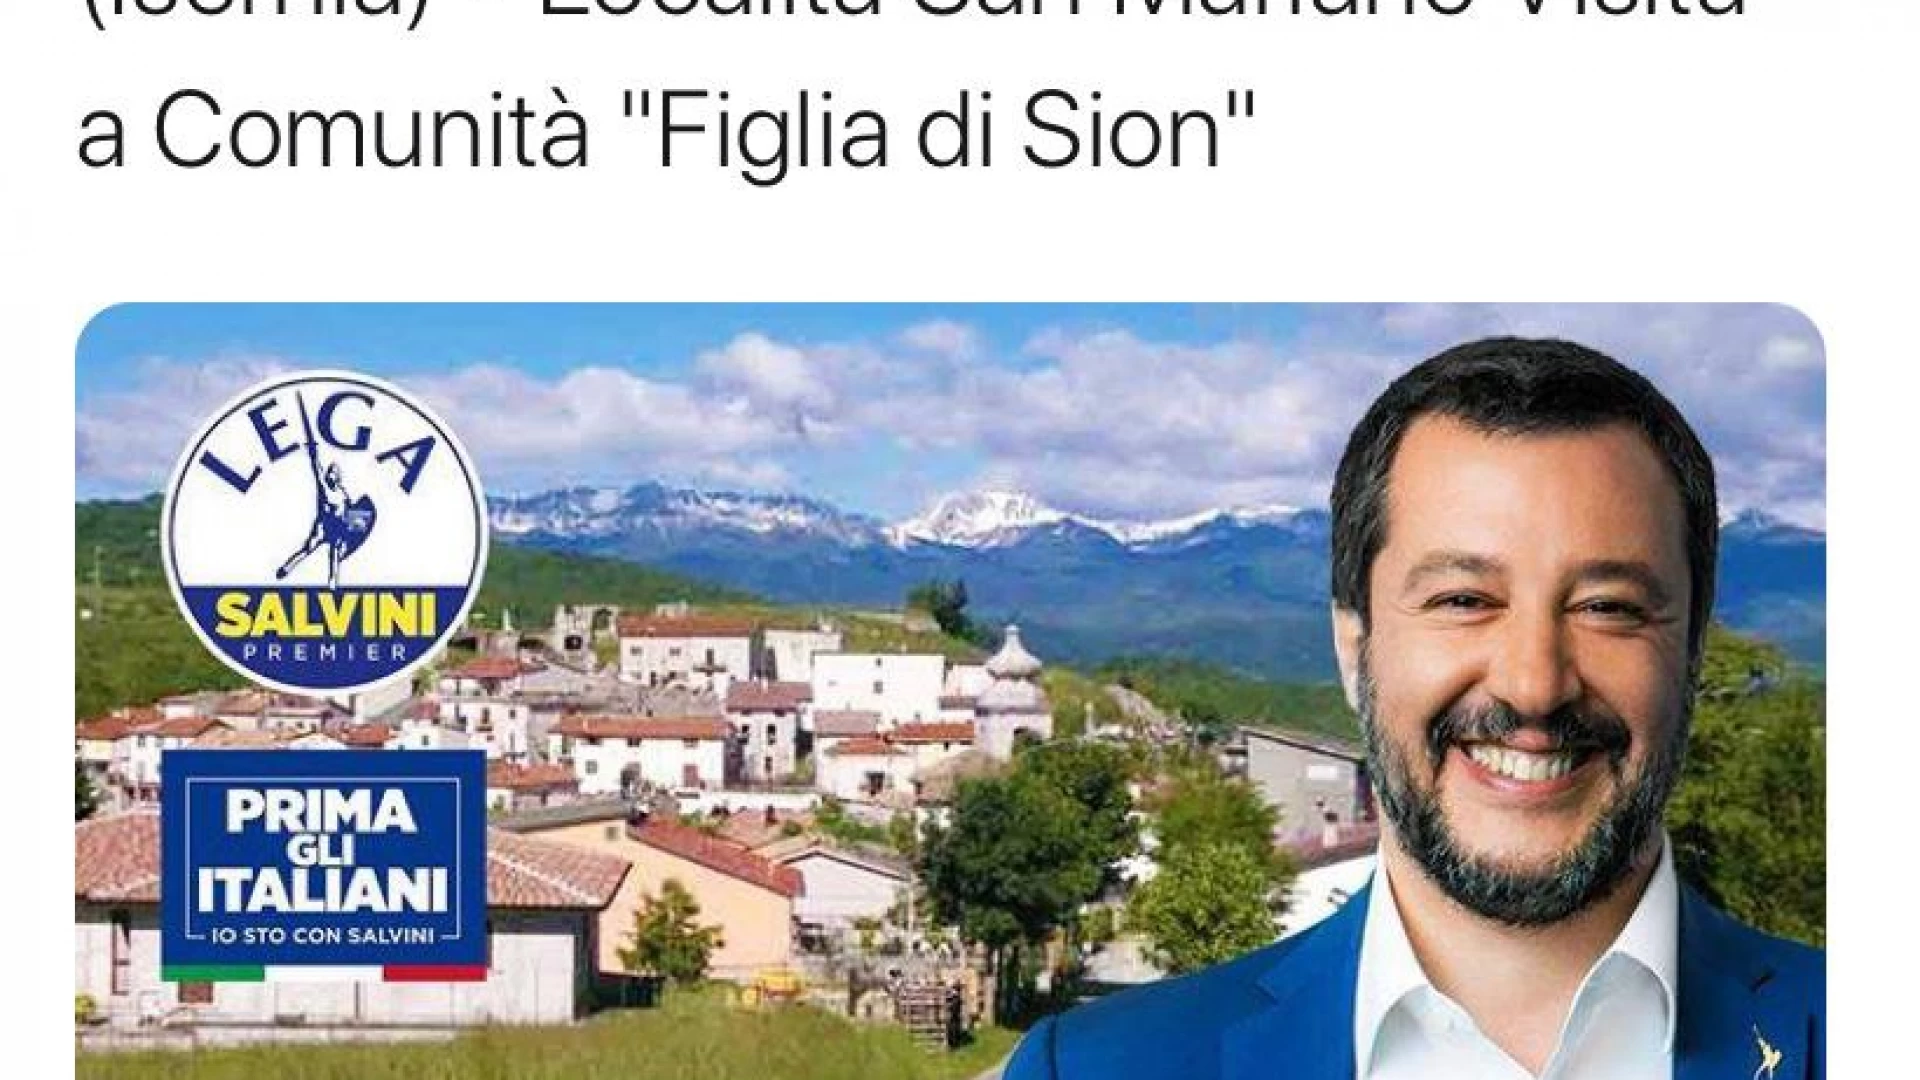 Rionero Sannitico: Matteo Salvini domani farà visita privatamente alla Comunità “Figlia di Sion”.